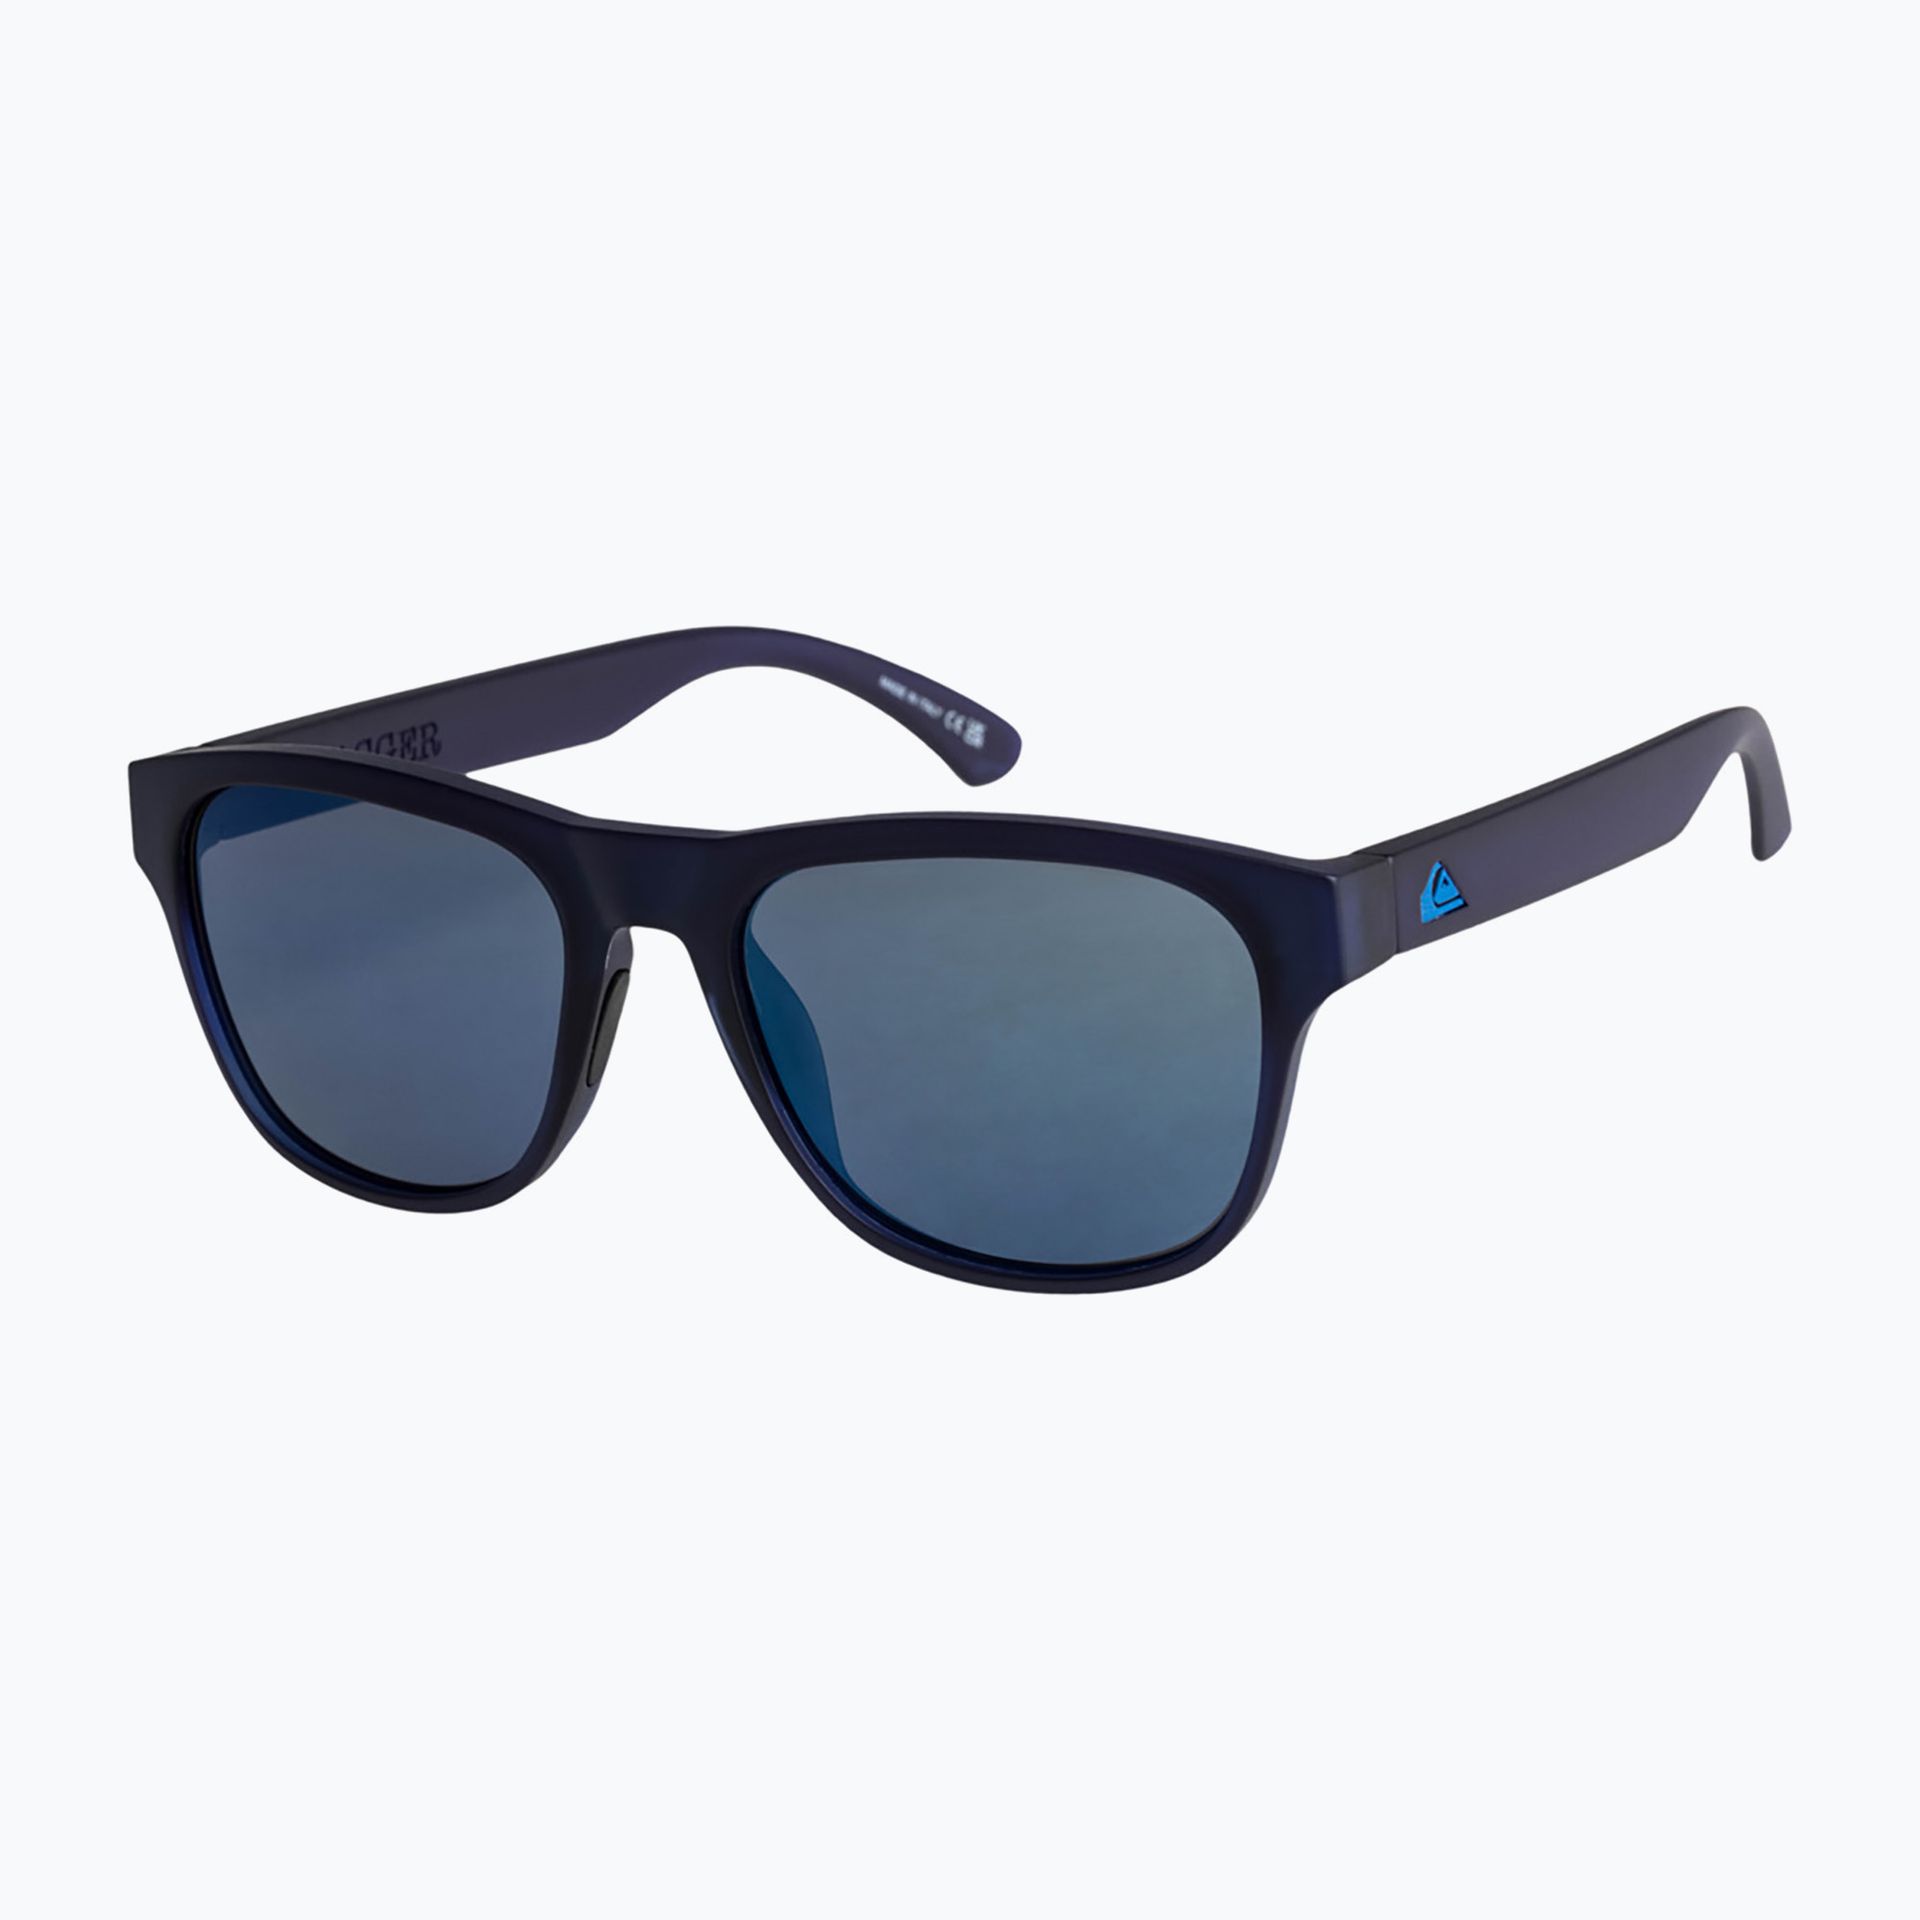 Okulary przeciwsłoneczne męskie Quiksilver Tagger navy flash blue | WYSYŁKA W 24H | 30 DNI NA ZWROT